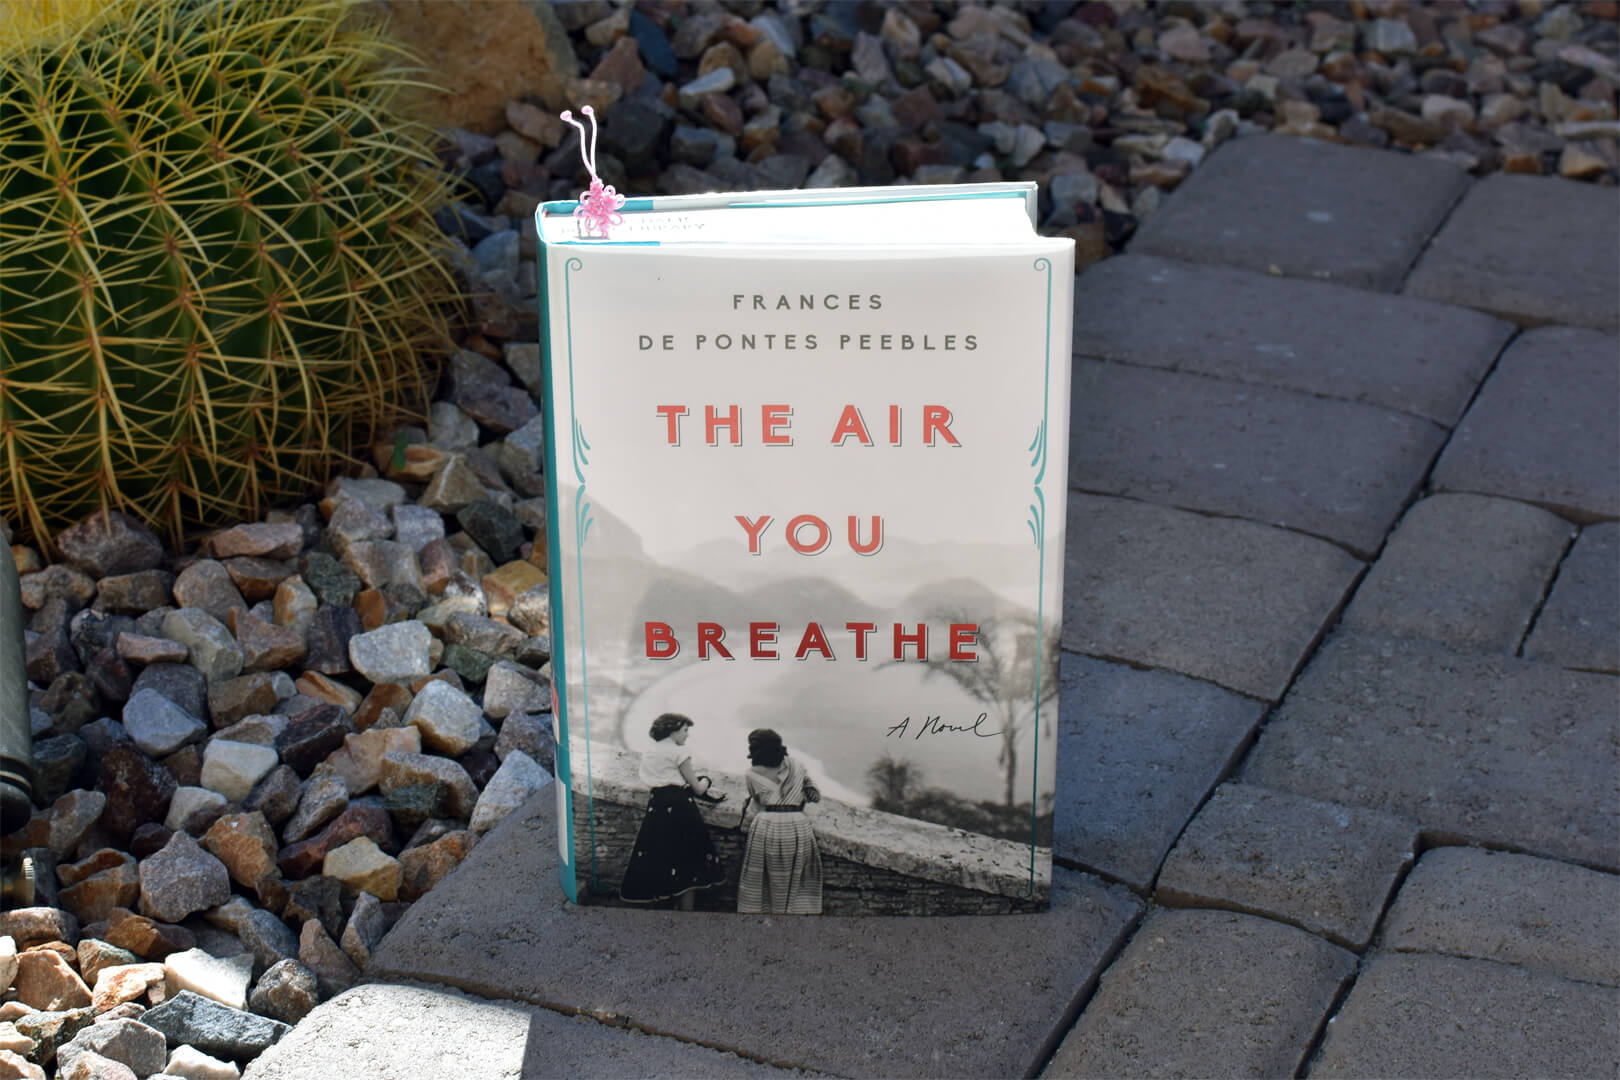 Review: The Air You Breathe by Frances de Pontes Peebles